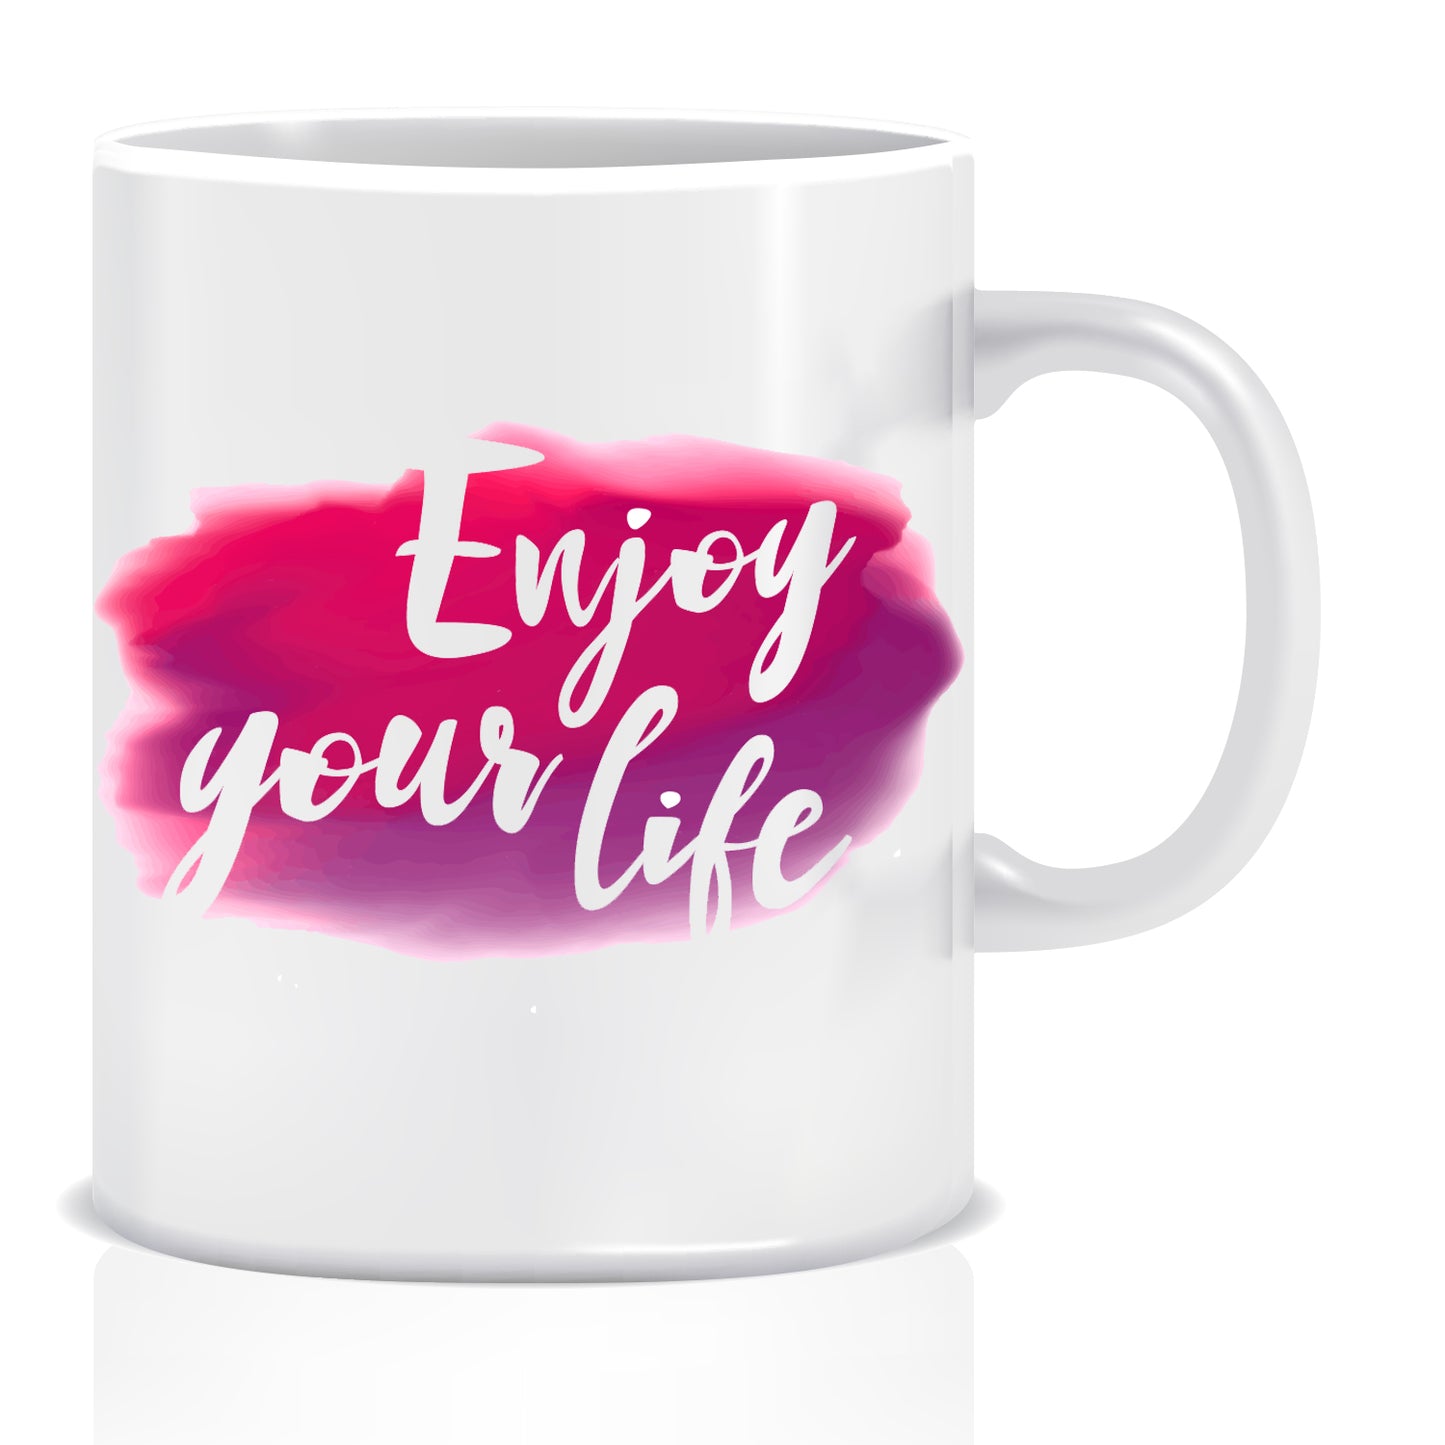 Enjoy Your Life Ceramic Coffee Mug -ED1368